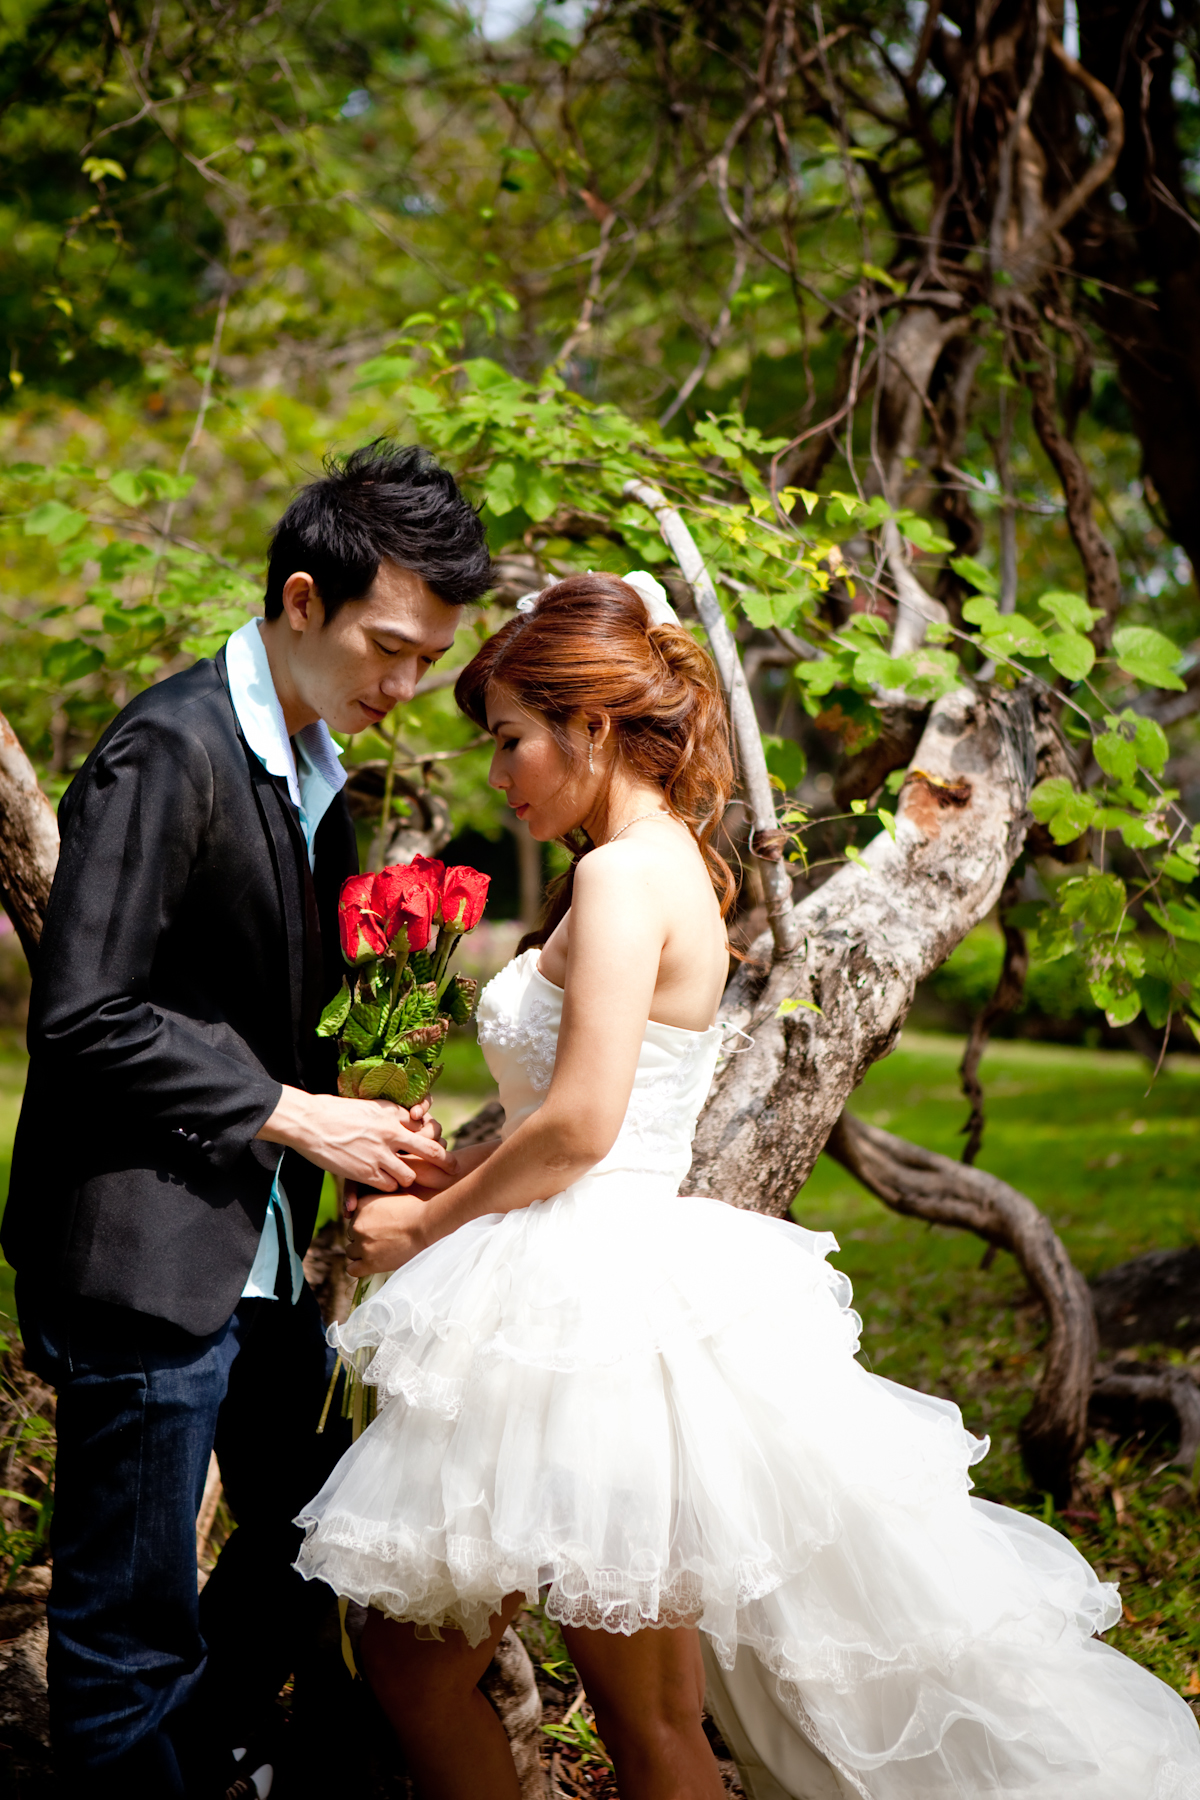 Huahin in love wedding studio  บริการถ่ายภาพ pre-wedding  แฟชั่น  ครอบครัว  ถ่ายภาพอีเวนท์ ผลิตภัณฑ์ ให้เช่าชุดราตรี  ชุดแต่งงาน ชุดไทย การ์ดแต่งงาน ของชำร่วย บริการและราคาเป็นกันเองค่ะ       